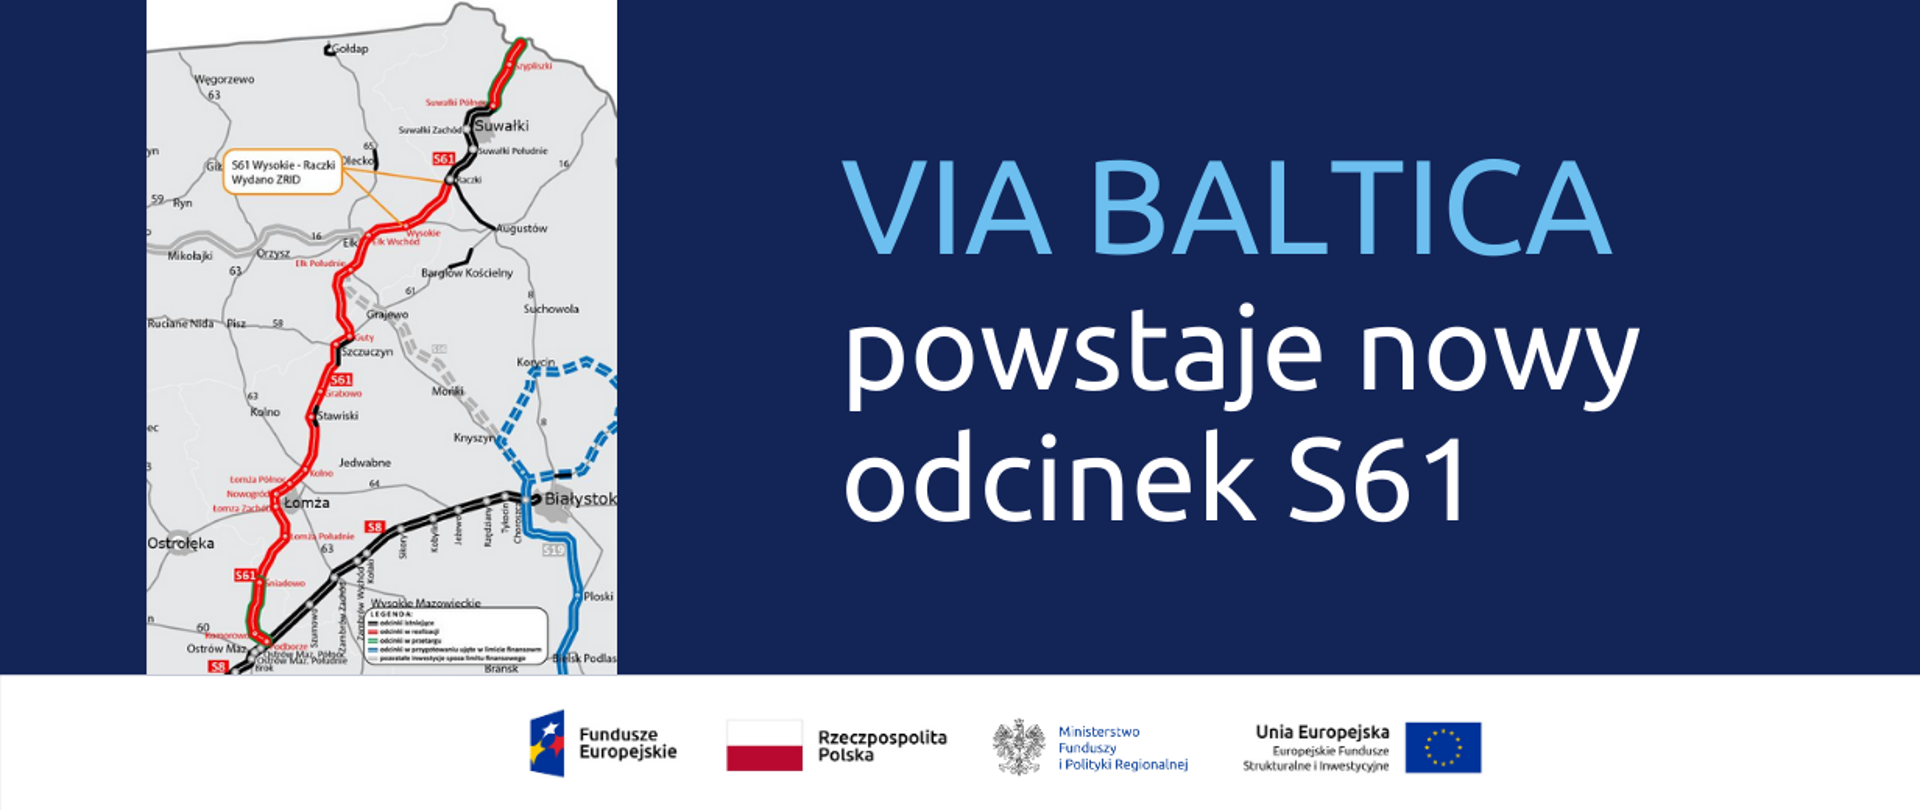 Na grafice po lewej stronie fragment mapy Polski, obok napis: Via Baltica
powstaje nowy odcinek S61. Na dole logo Funduszy Europejskich, Ministerstwa Funduszy i Polityki Regionalnej, Unii Europejskiej oraz flaga RP